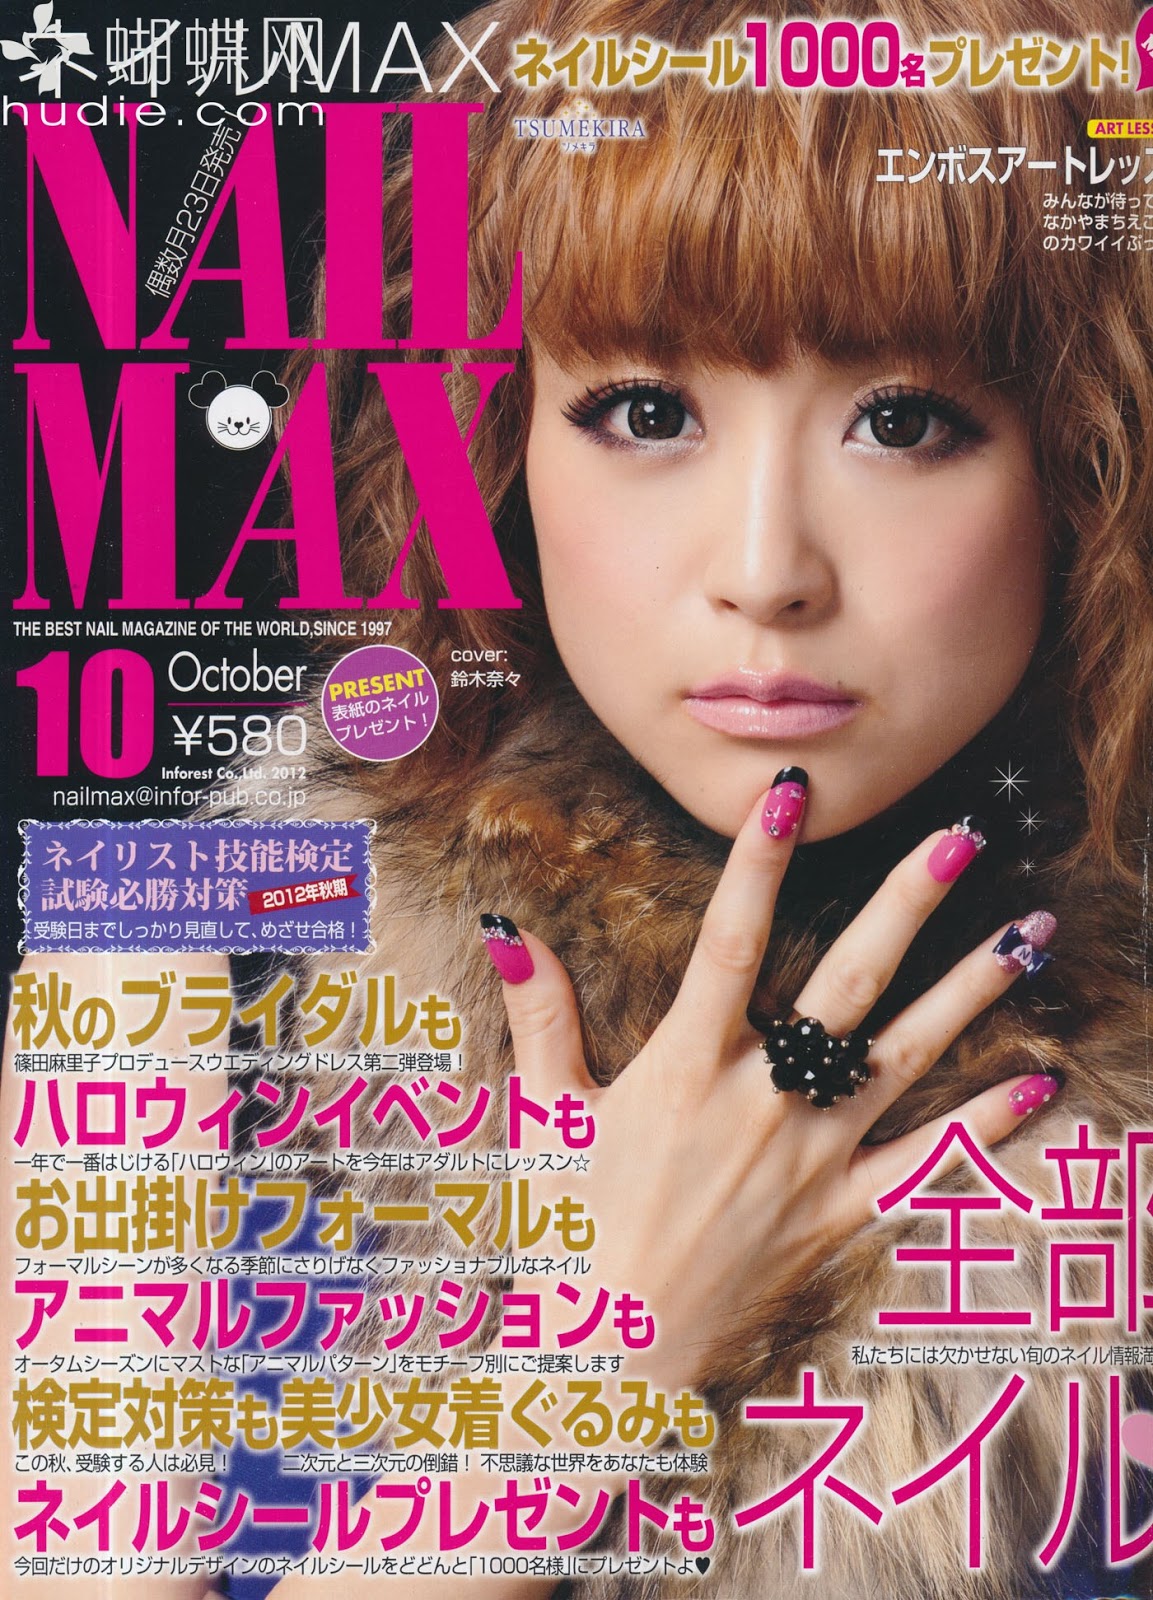 Super max s magazine  